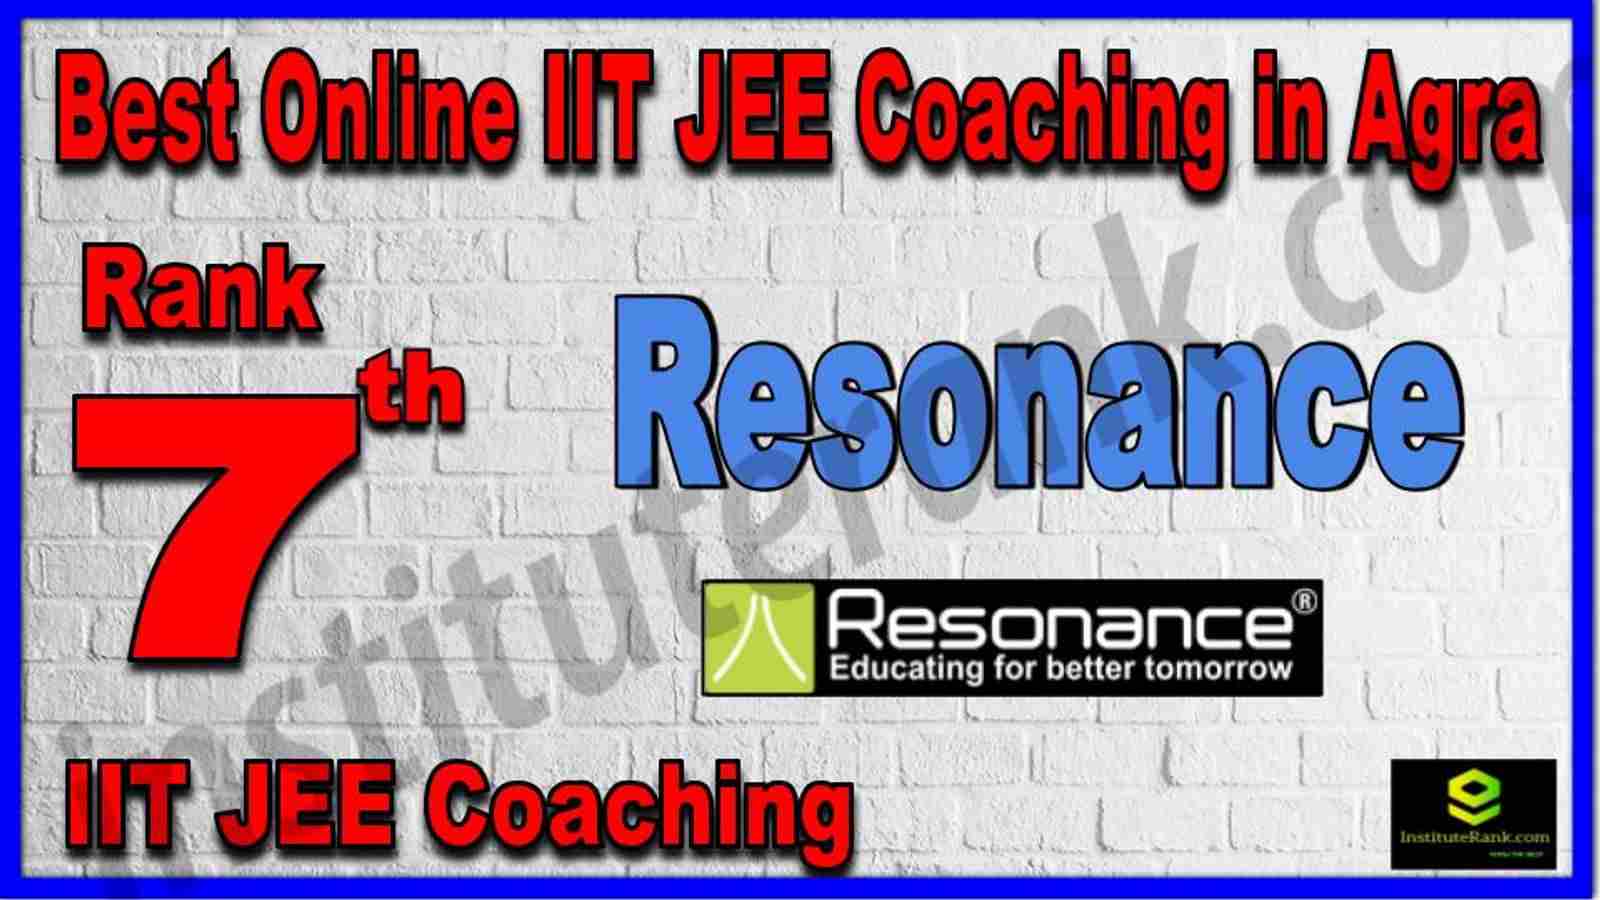 Rank 7th Best Online IIT JEE Coaching in Agra